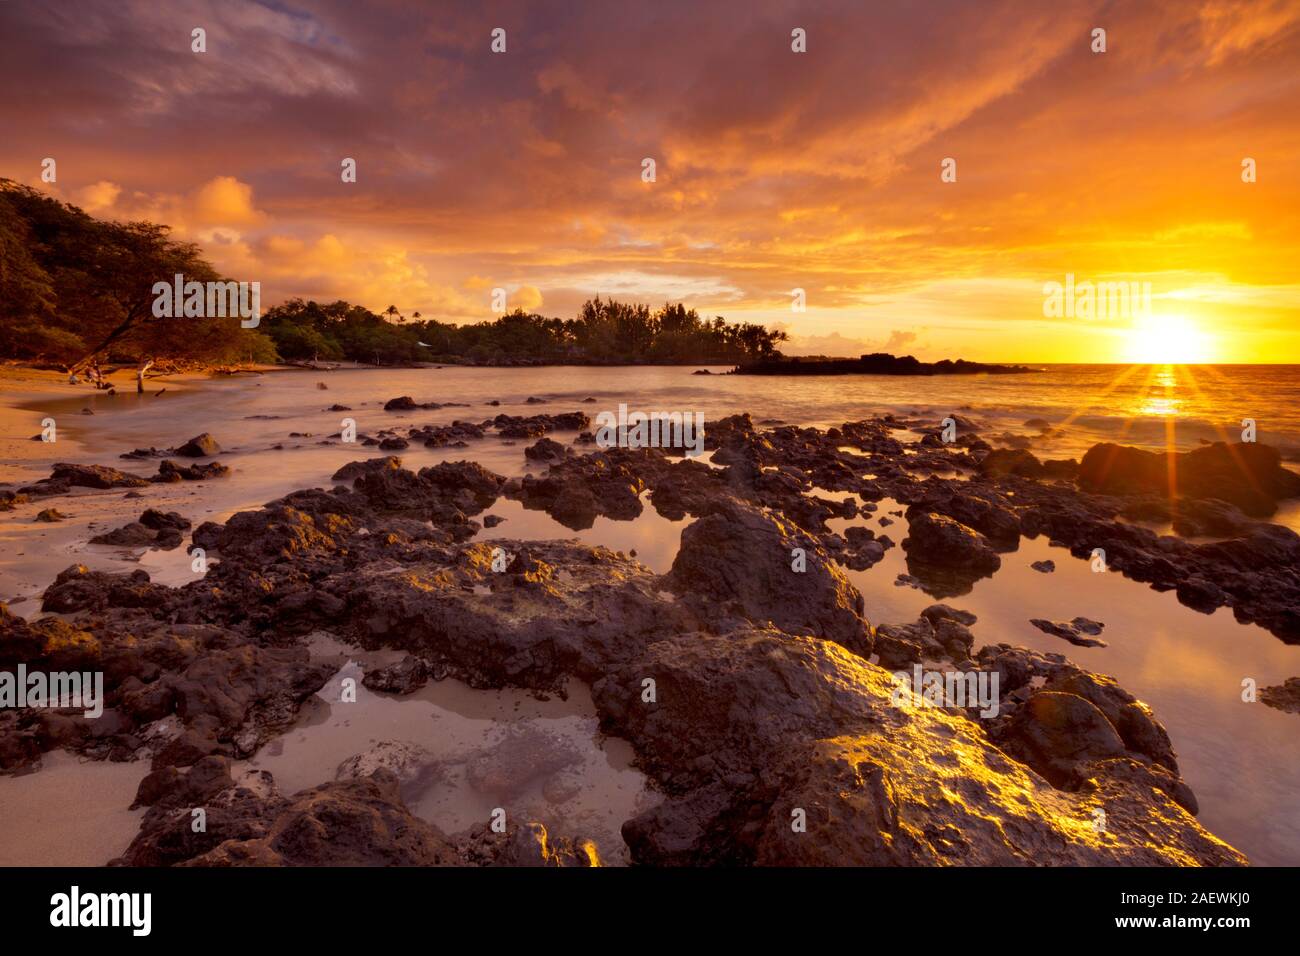 Espectacular puesta de sol en la playa o playa Waialea 69 en la costa Kohala de la Isla Grande de Hawai, Estados Unidos. Foto de stock